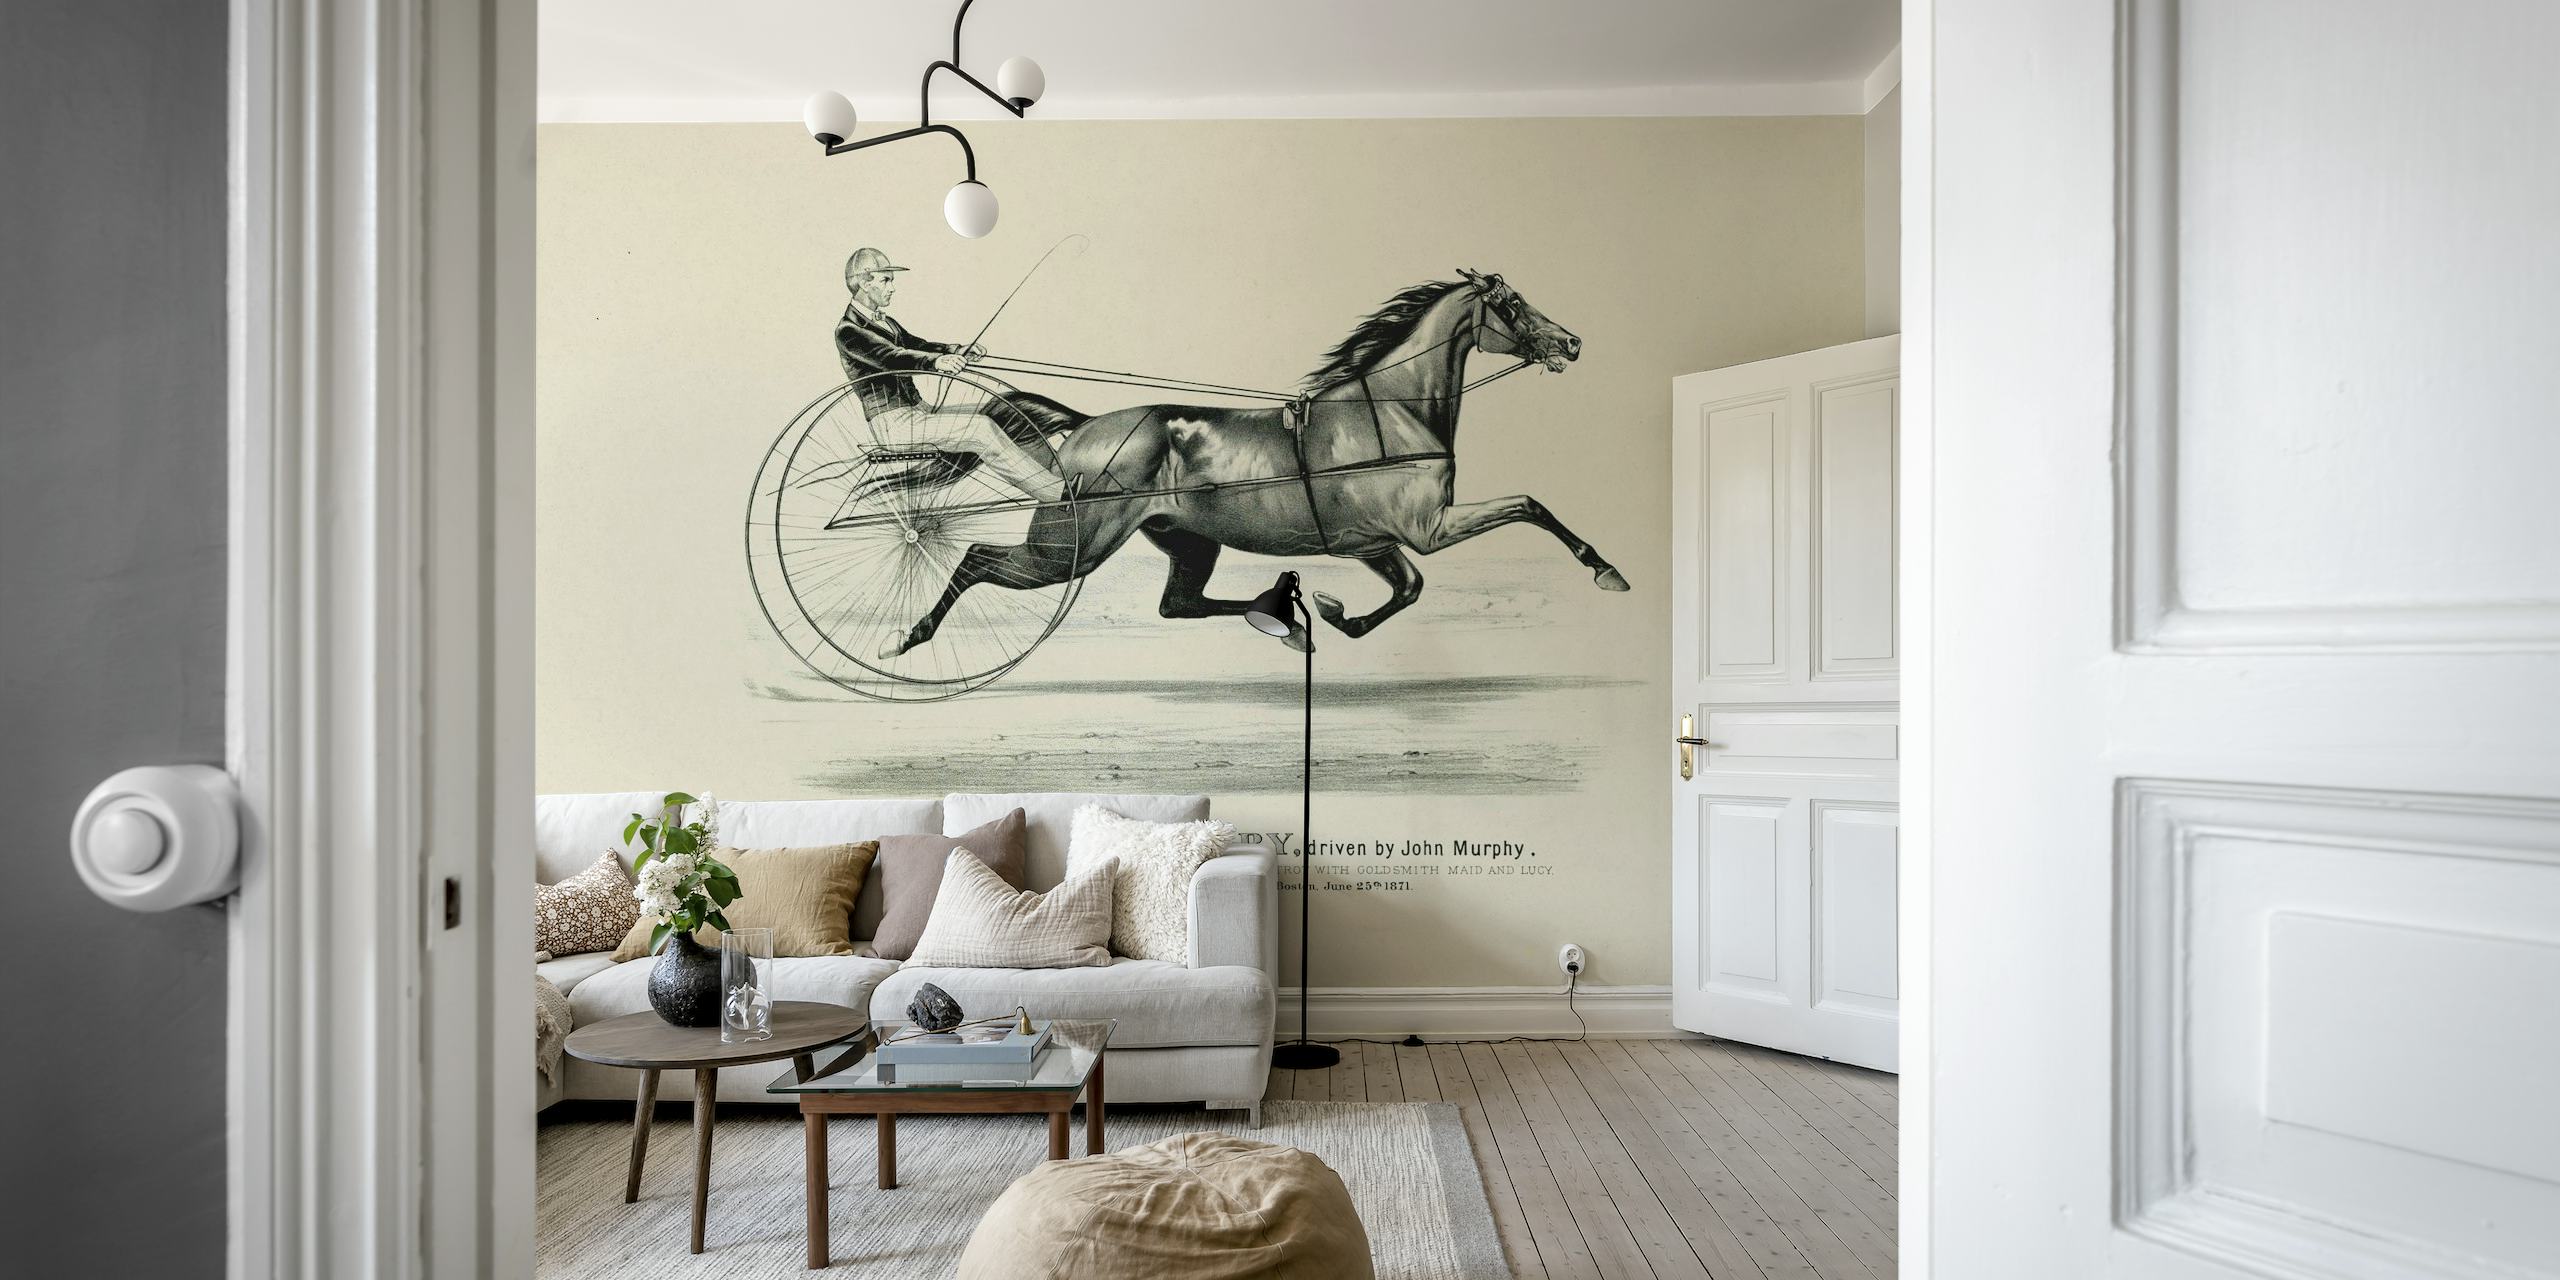 Mural histórico de arte de equitación que representa un caballo y un jinete en estilo clásico.